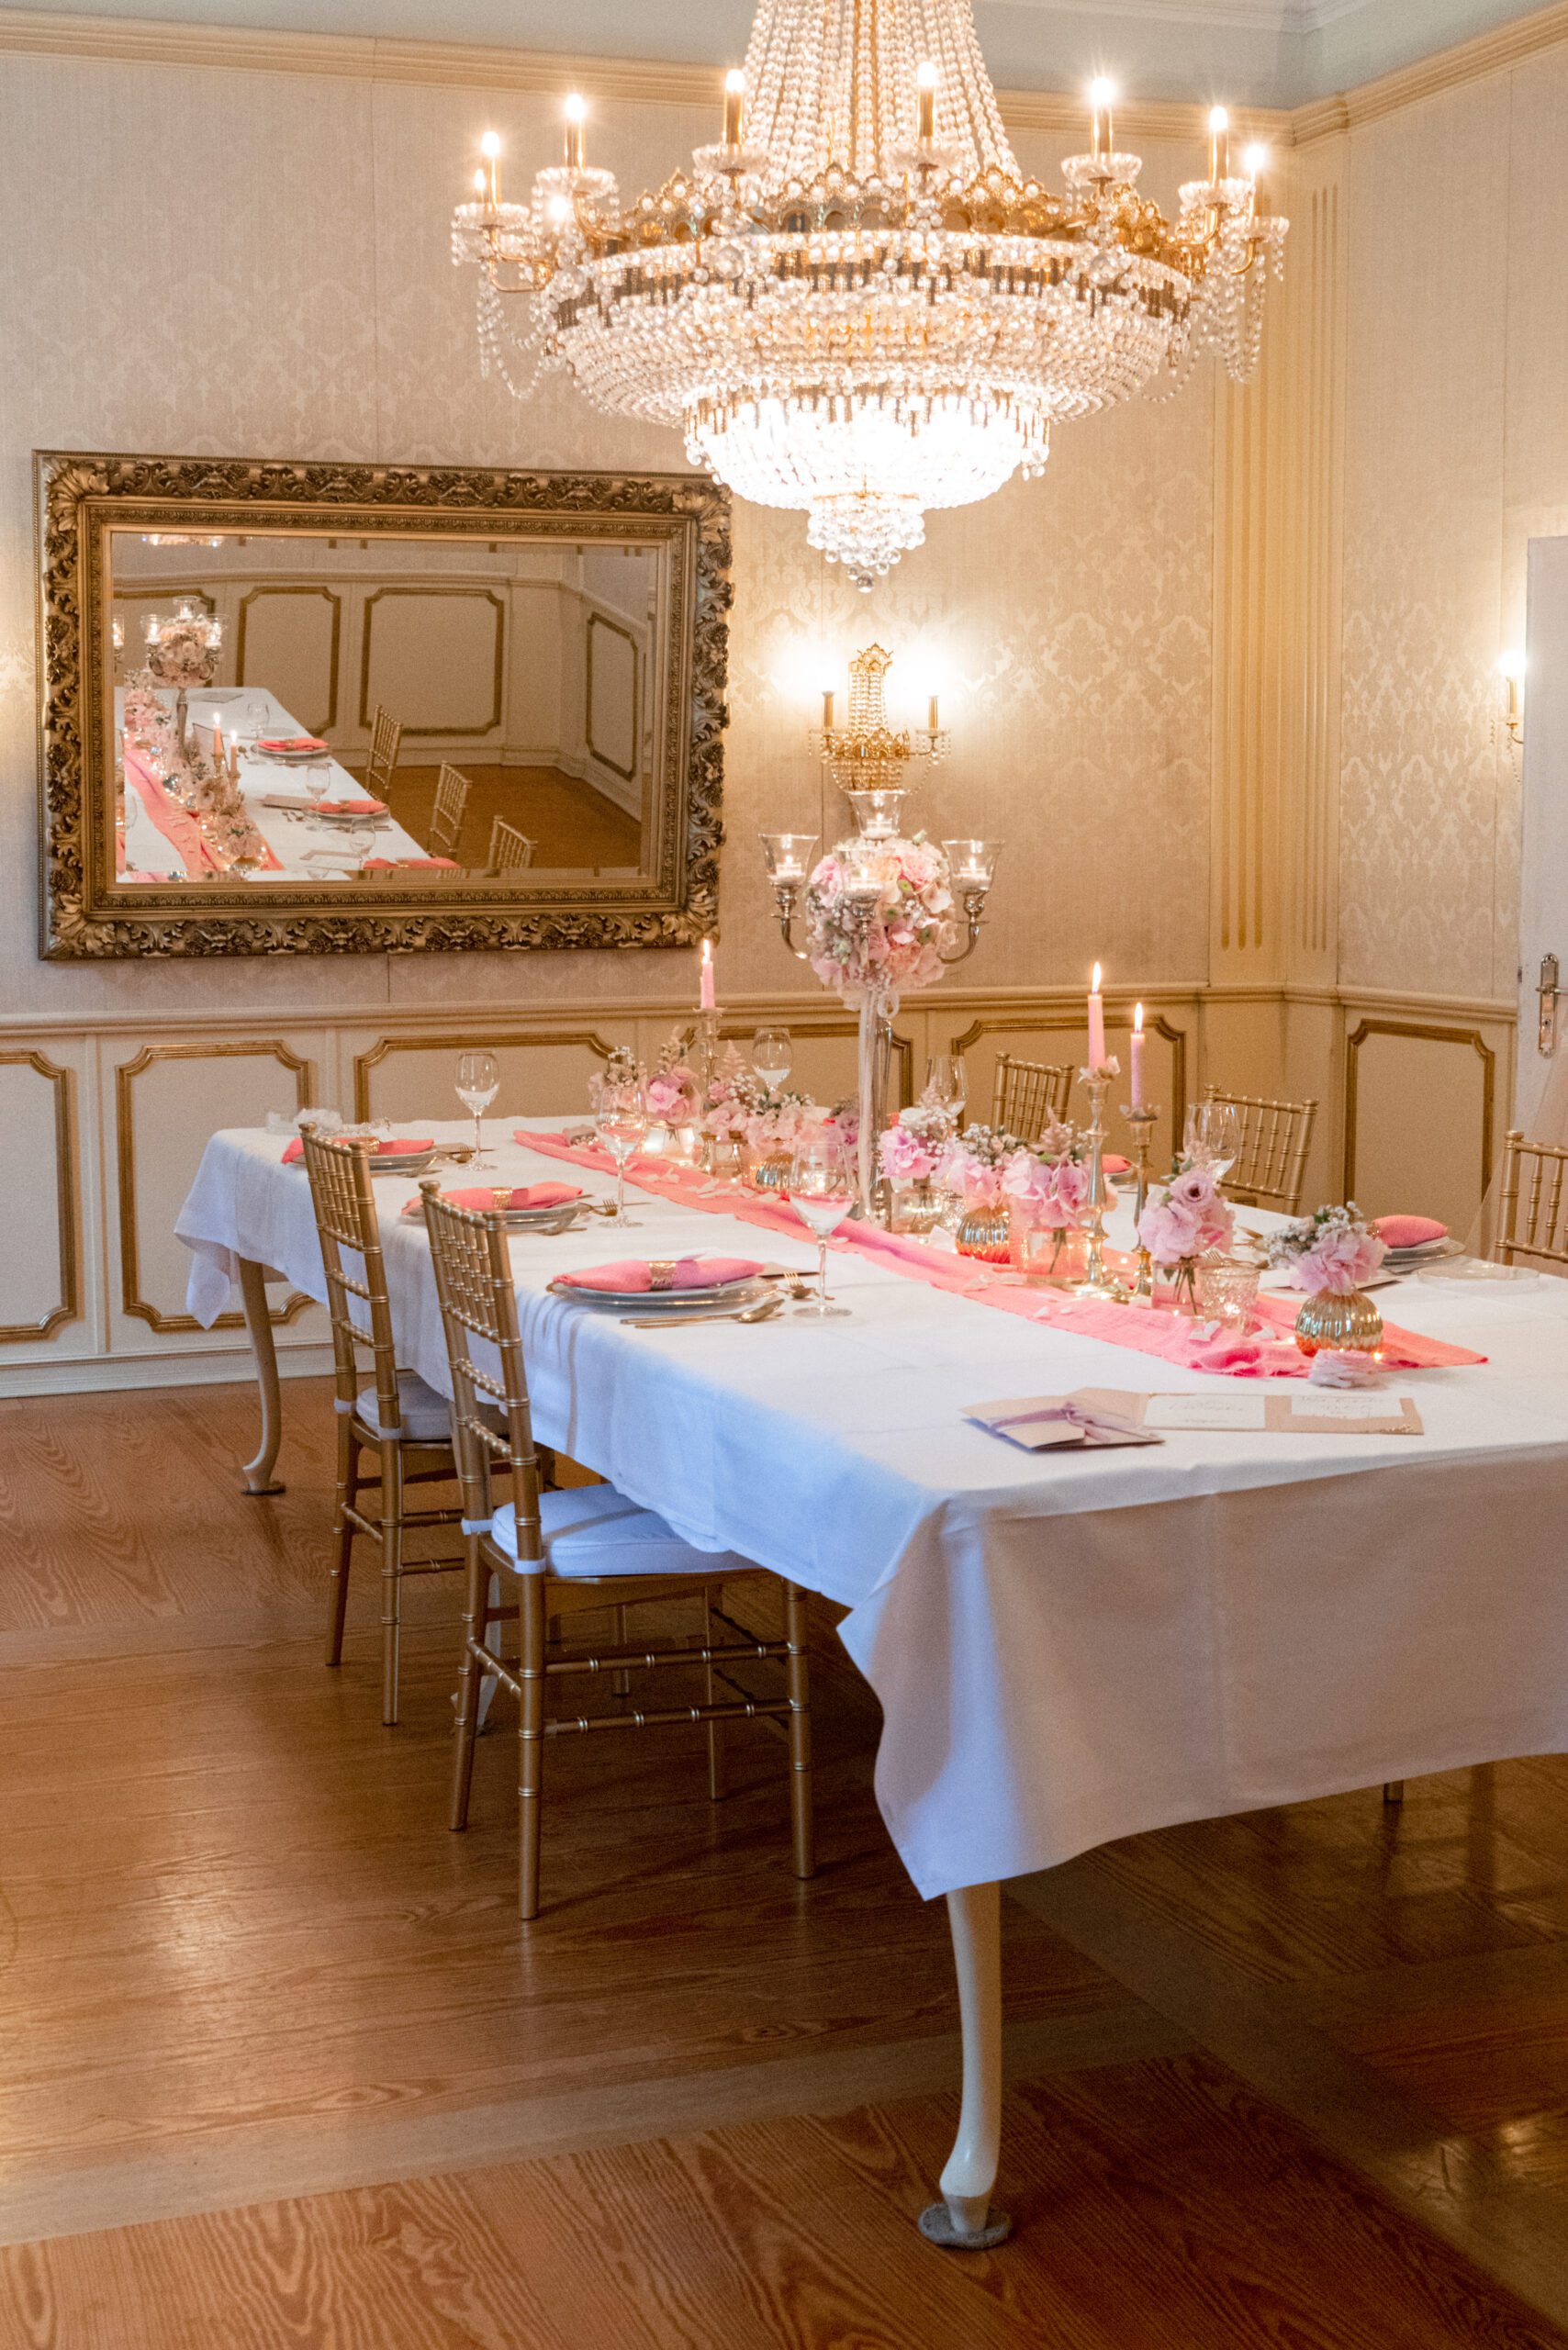 Hochzeitstisch, goldene Tischdekoration, Dekorationskonzept, Hochzeitsplanung Celine Amberg, Hochzeitsplanerin Aschaffenburg, Rhein-Main Gebiet, Frankfurt, Würzburg